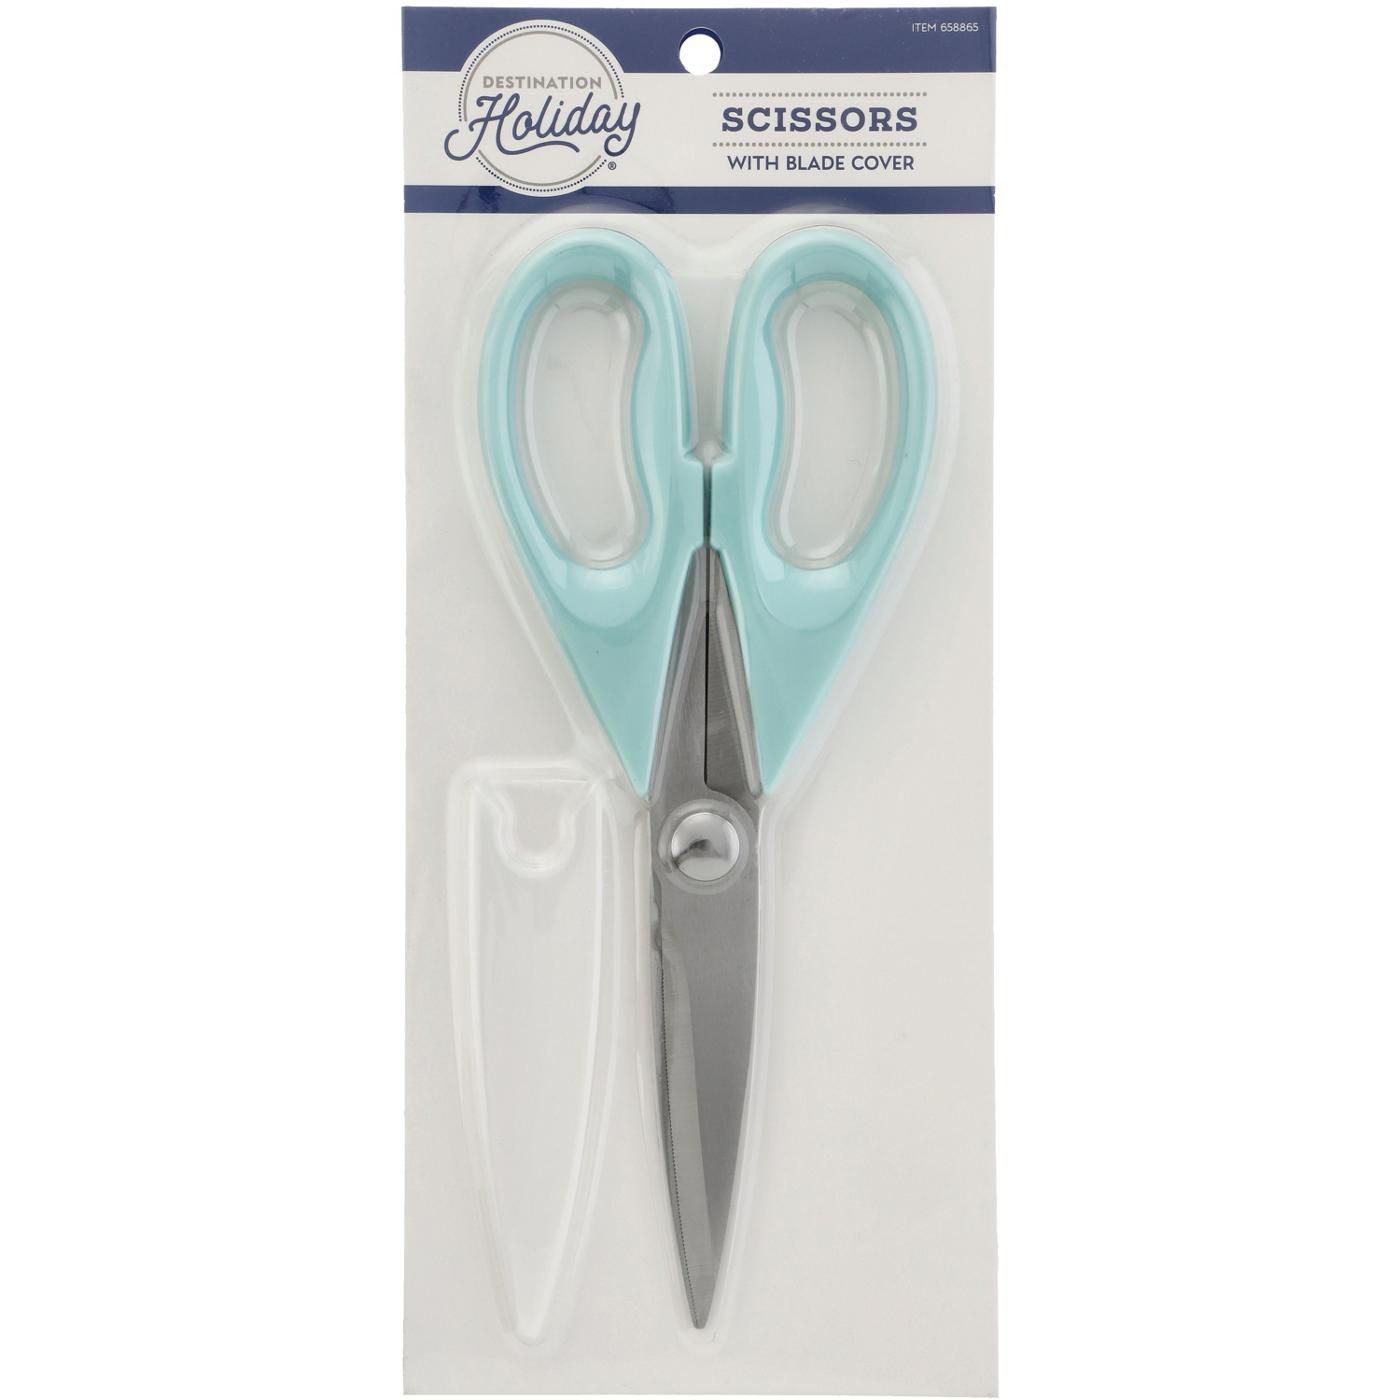 Destination Holiday Scissors With Cover - Aqua; image 1 of 2